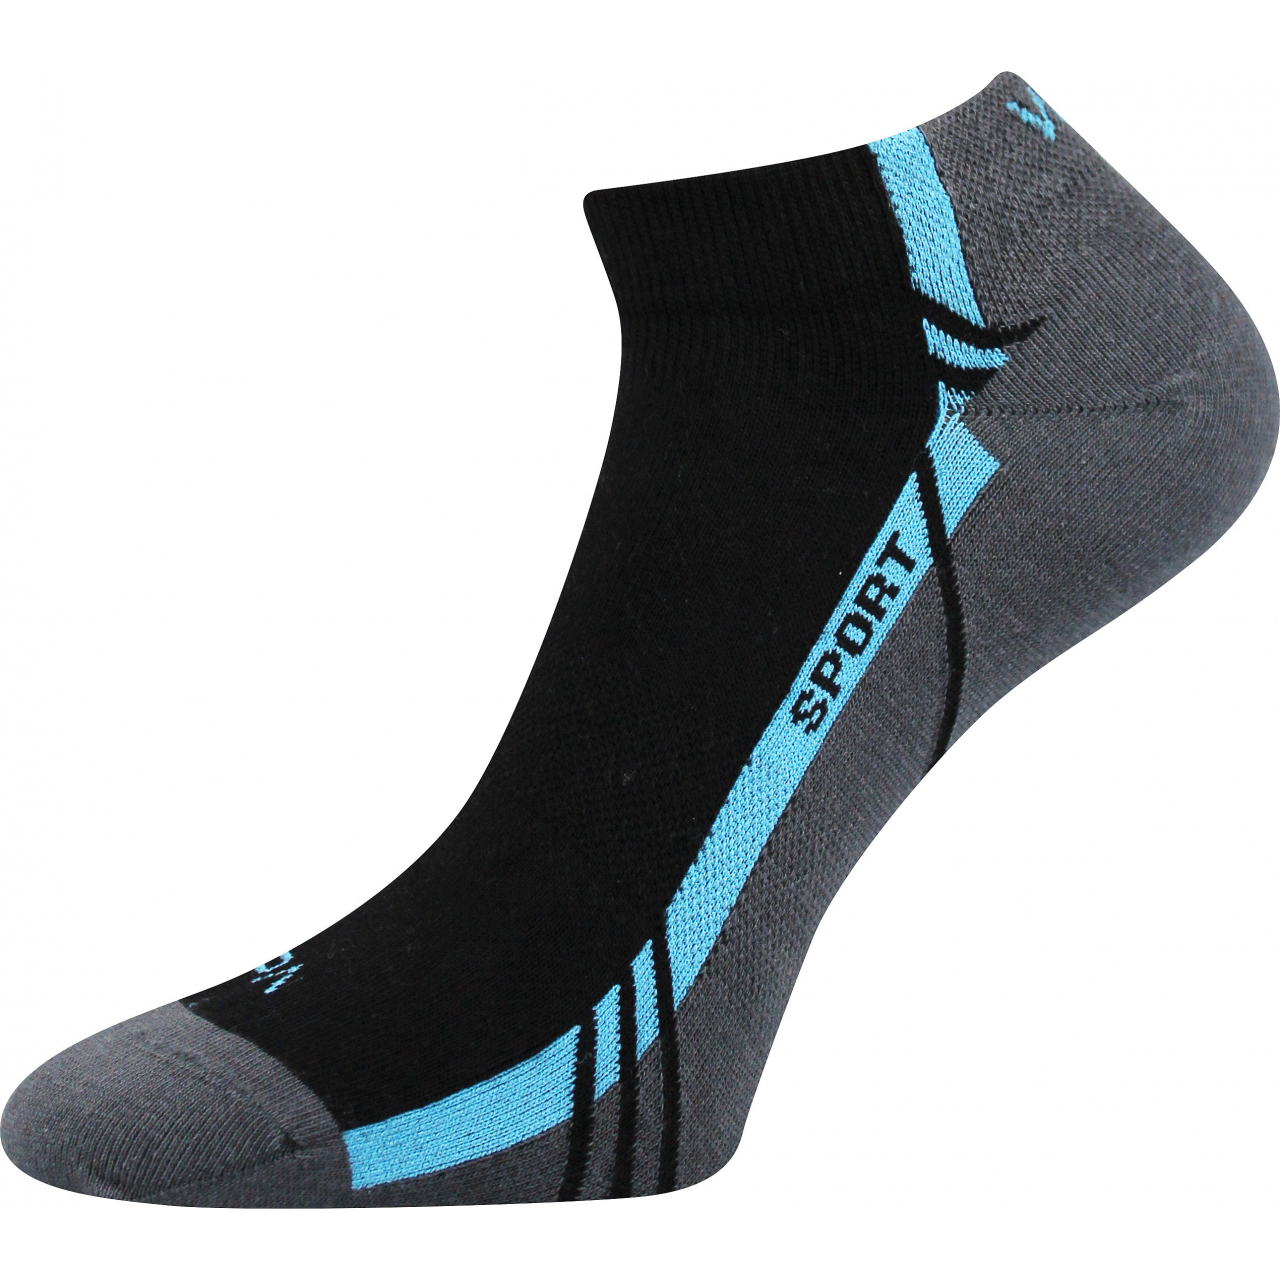 Ponožky unisex sportovní Voxx Pinas - černé-modré, 39-42